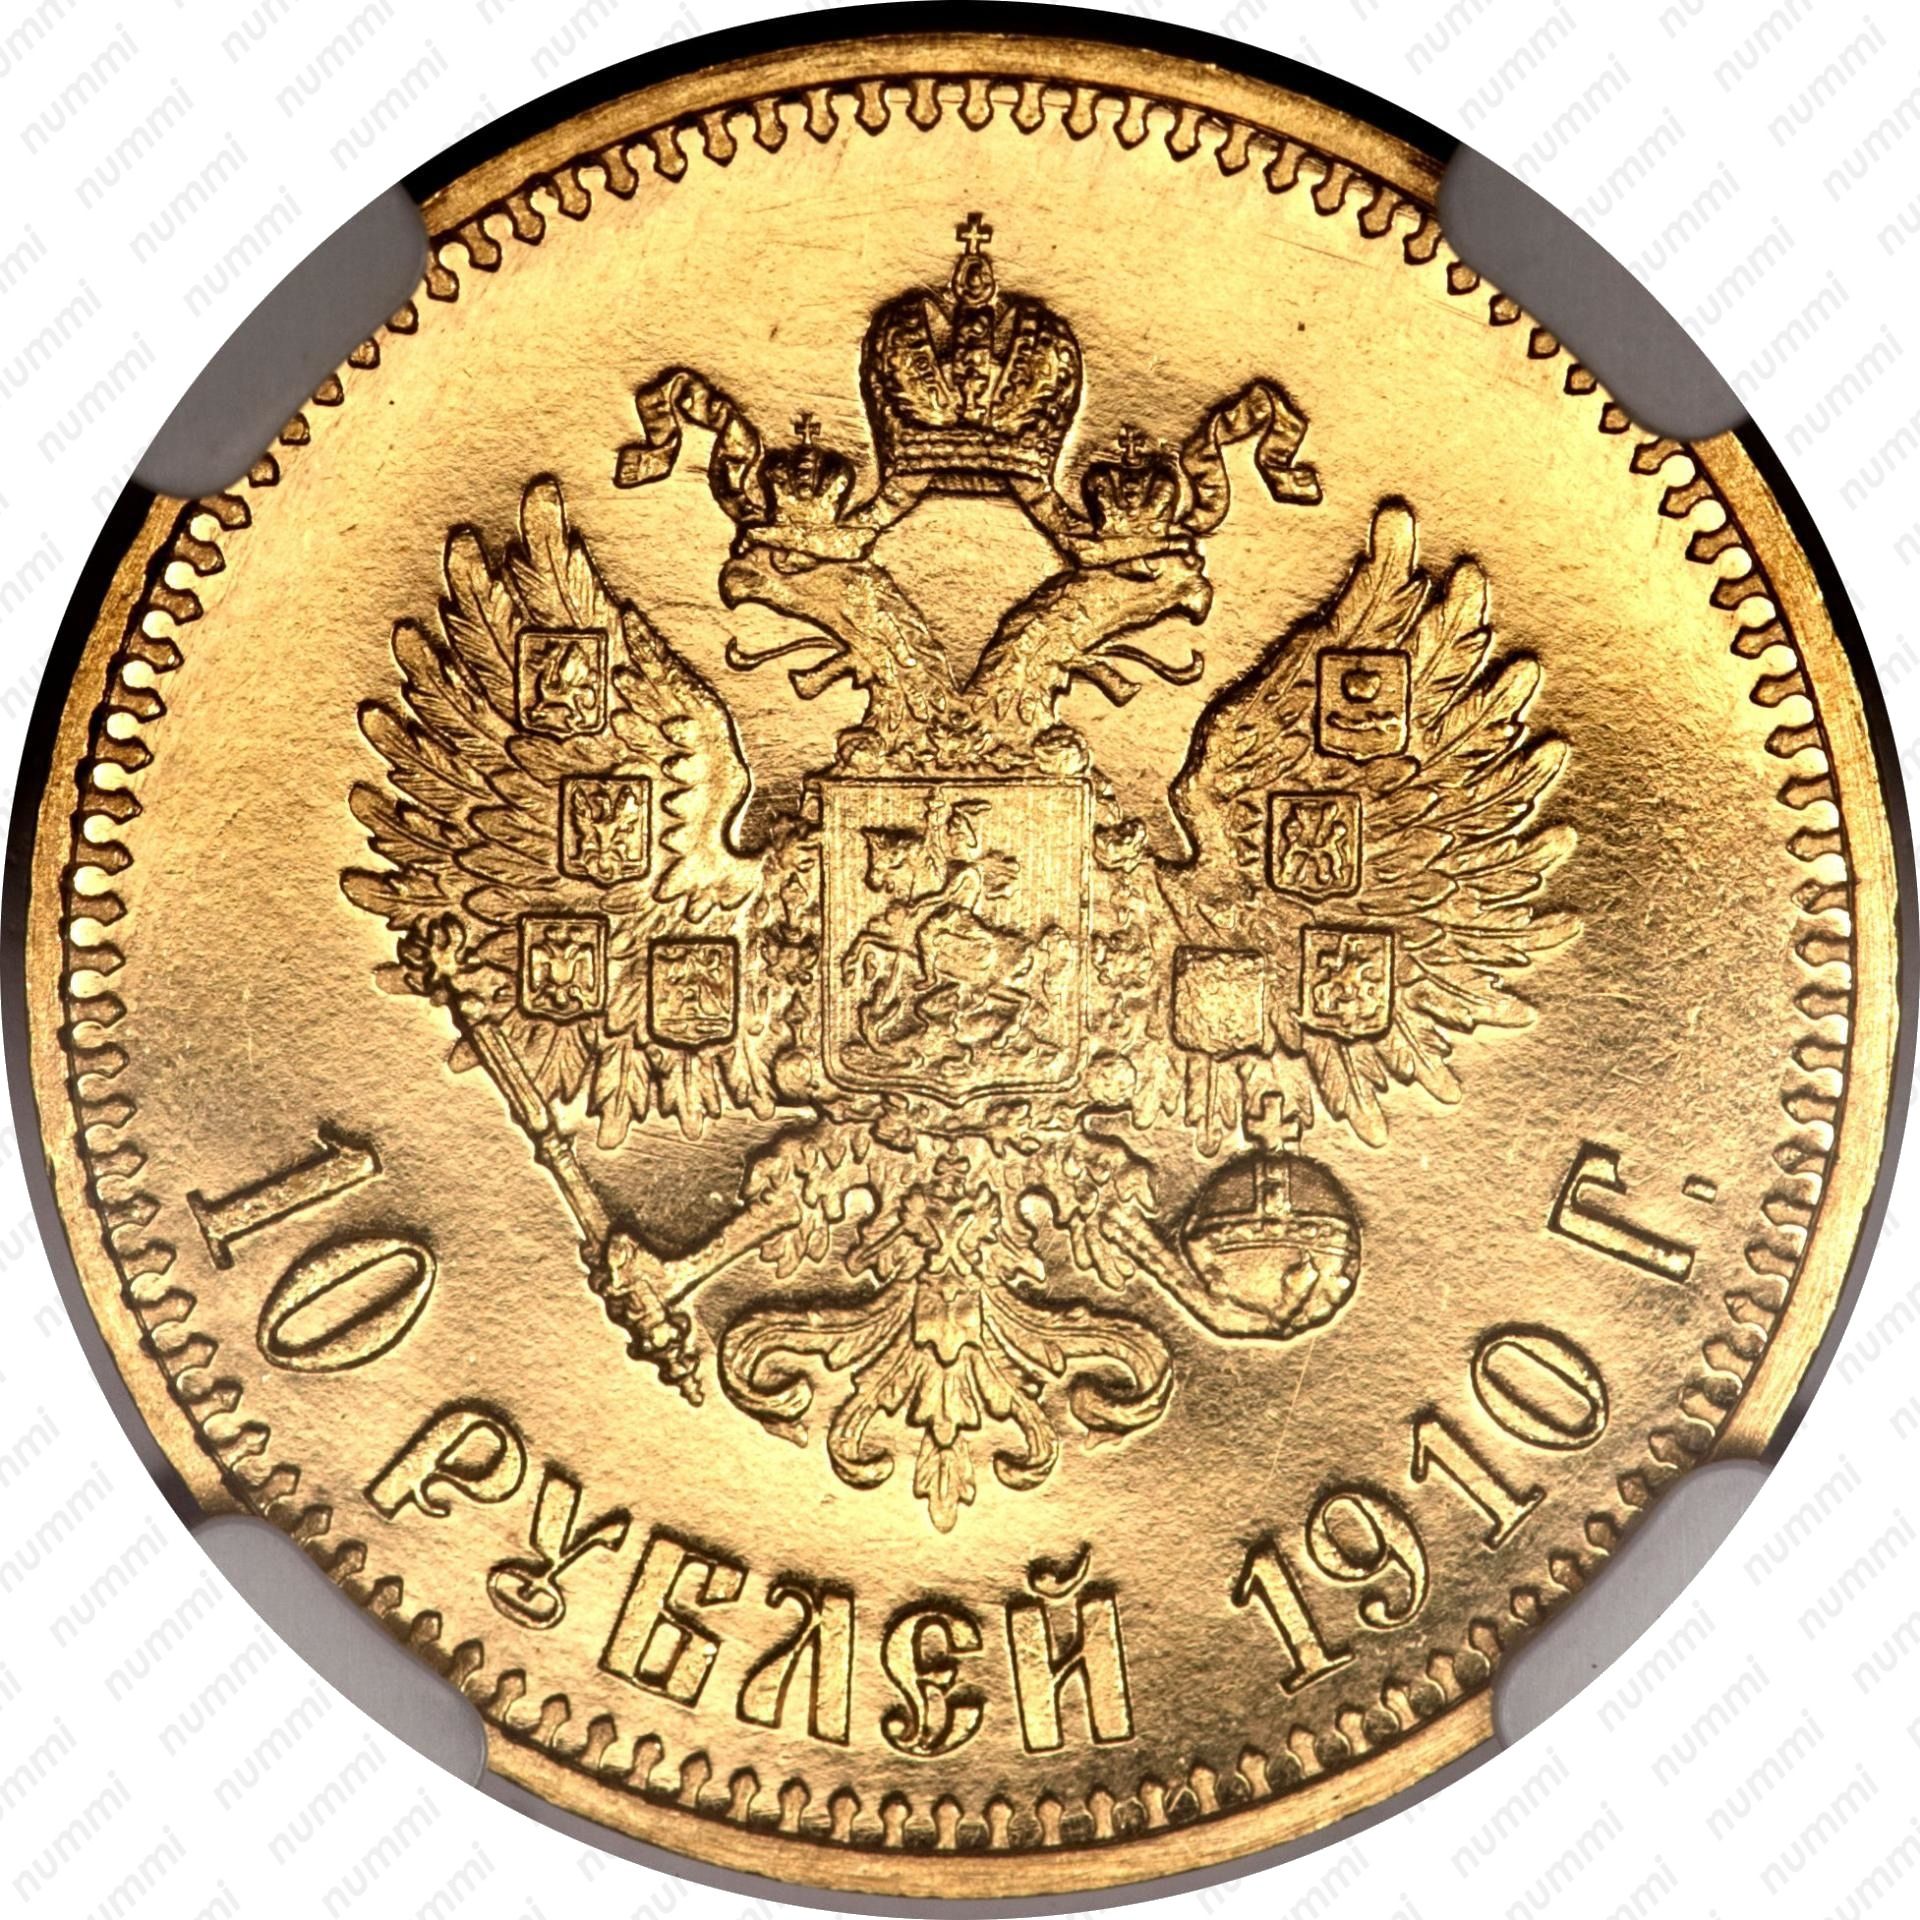 Цена золотой монеты 10 рублей. Царские золотые монеты Николая 2.